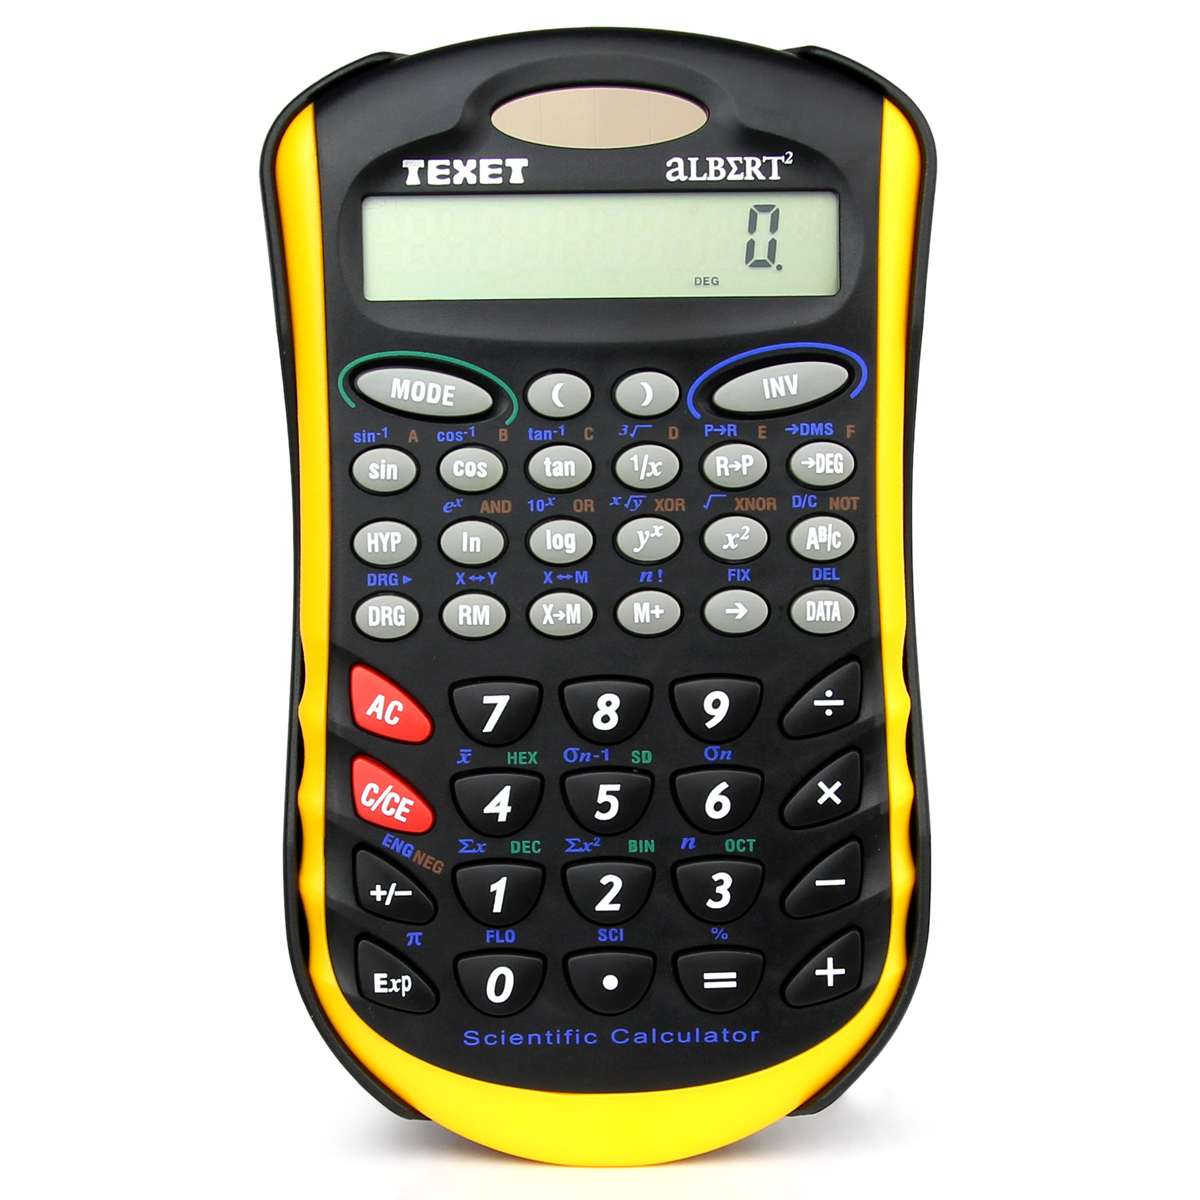 Texet Albert2 Calculator